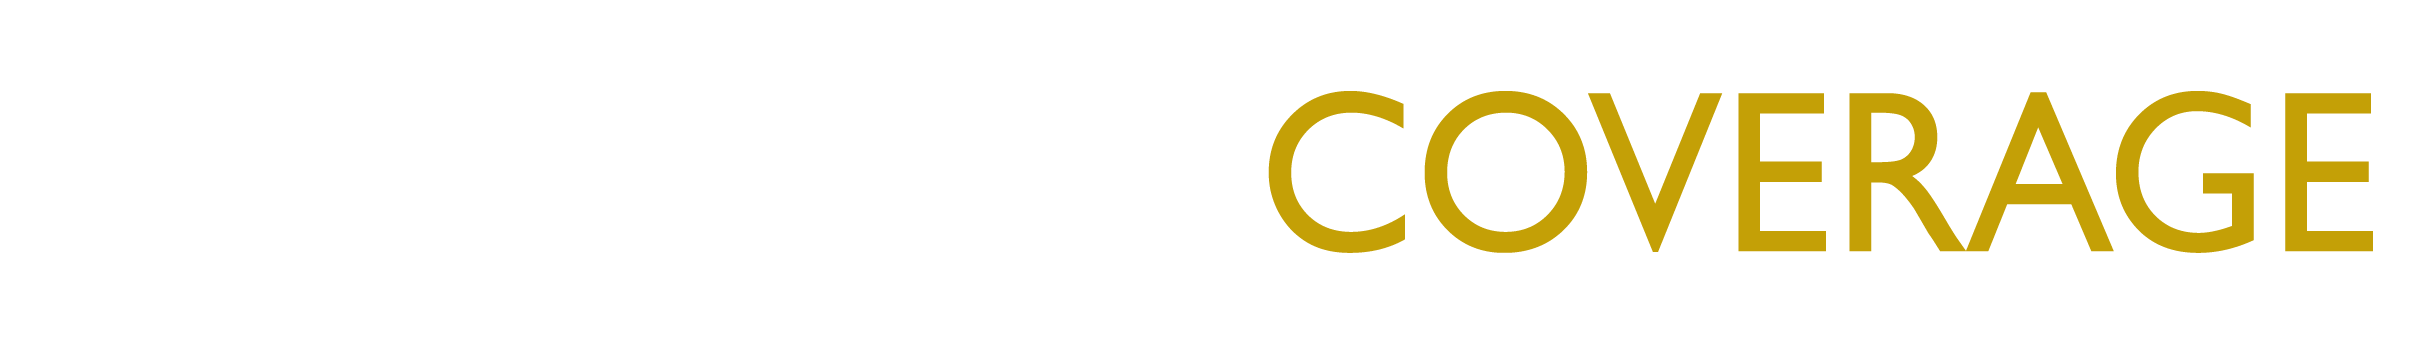 BuyingCoverage.com logo